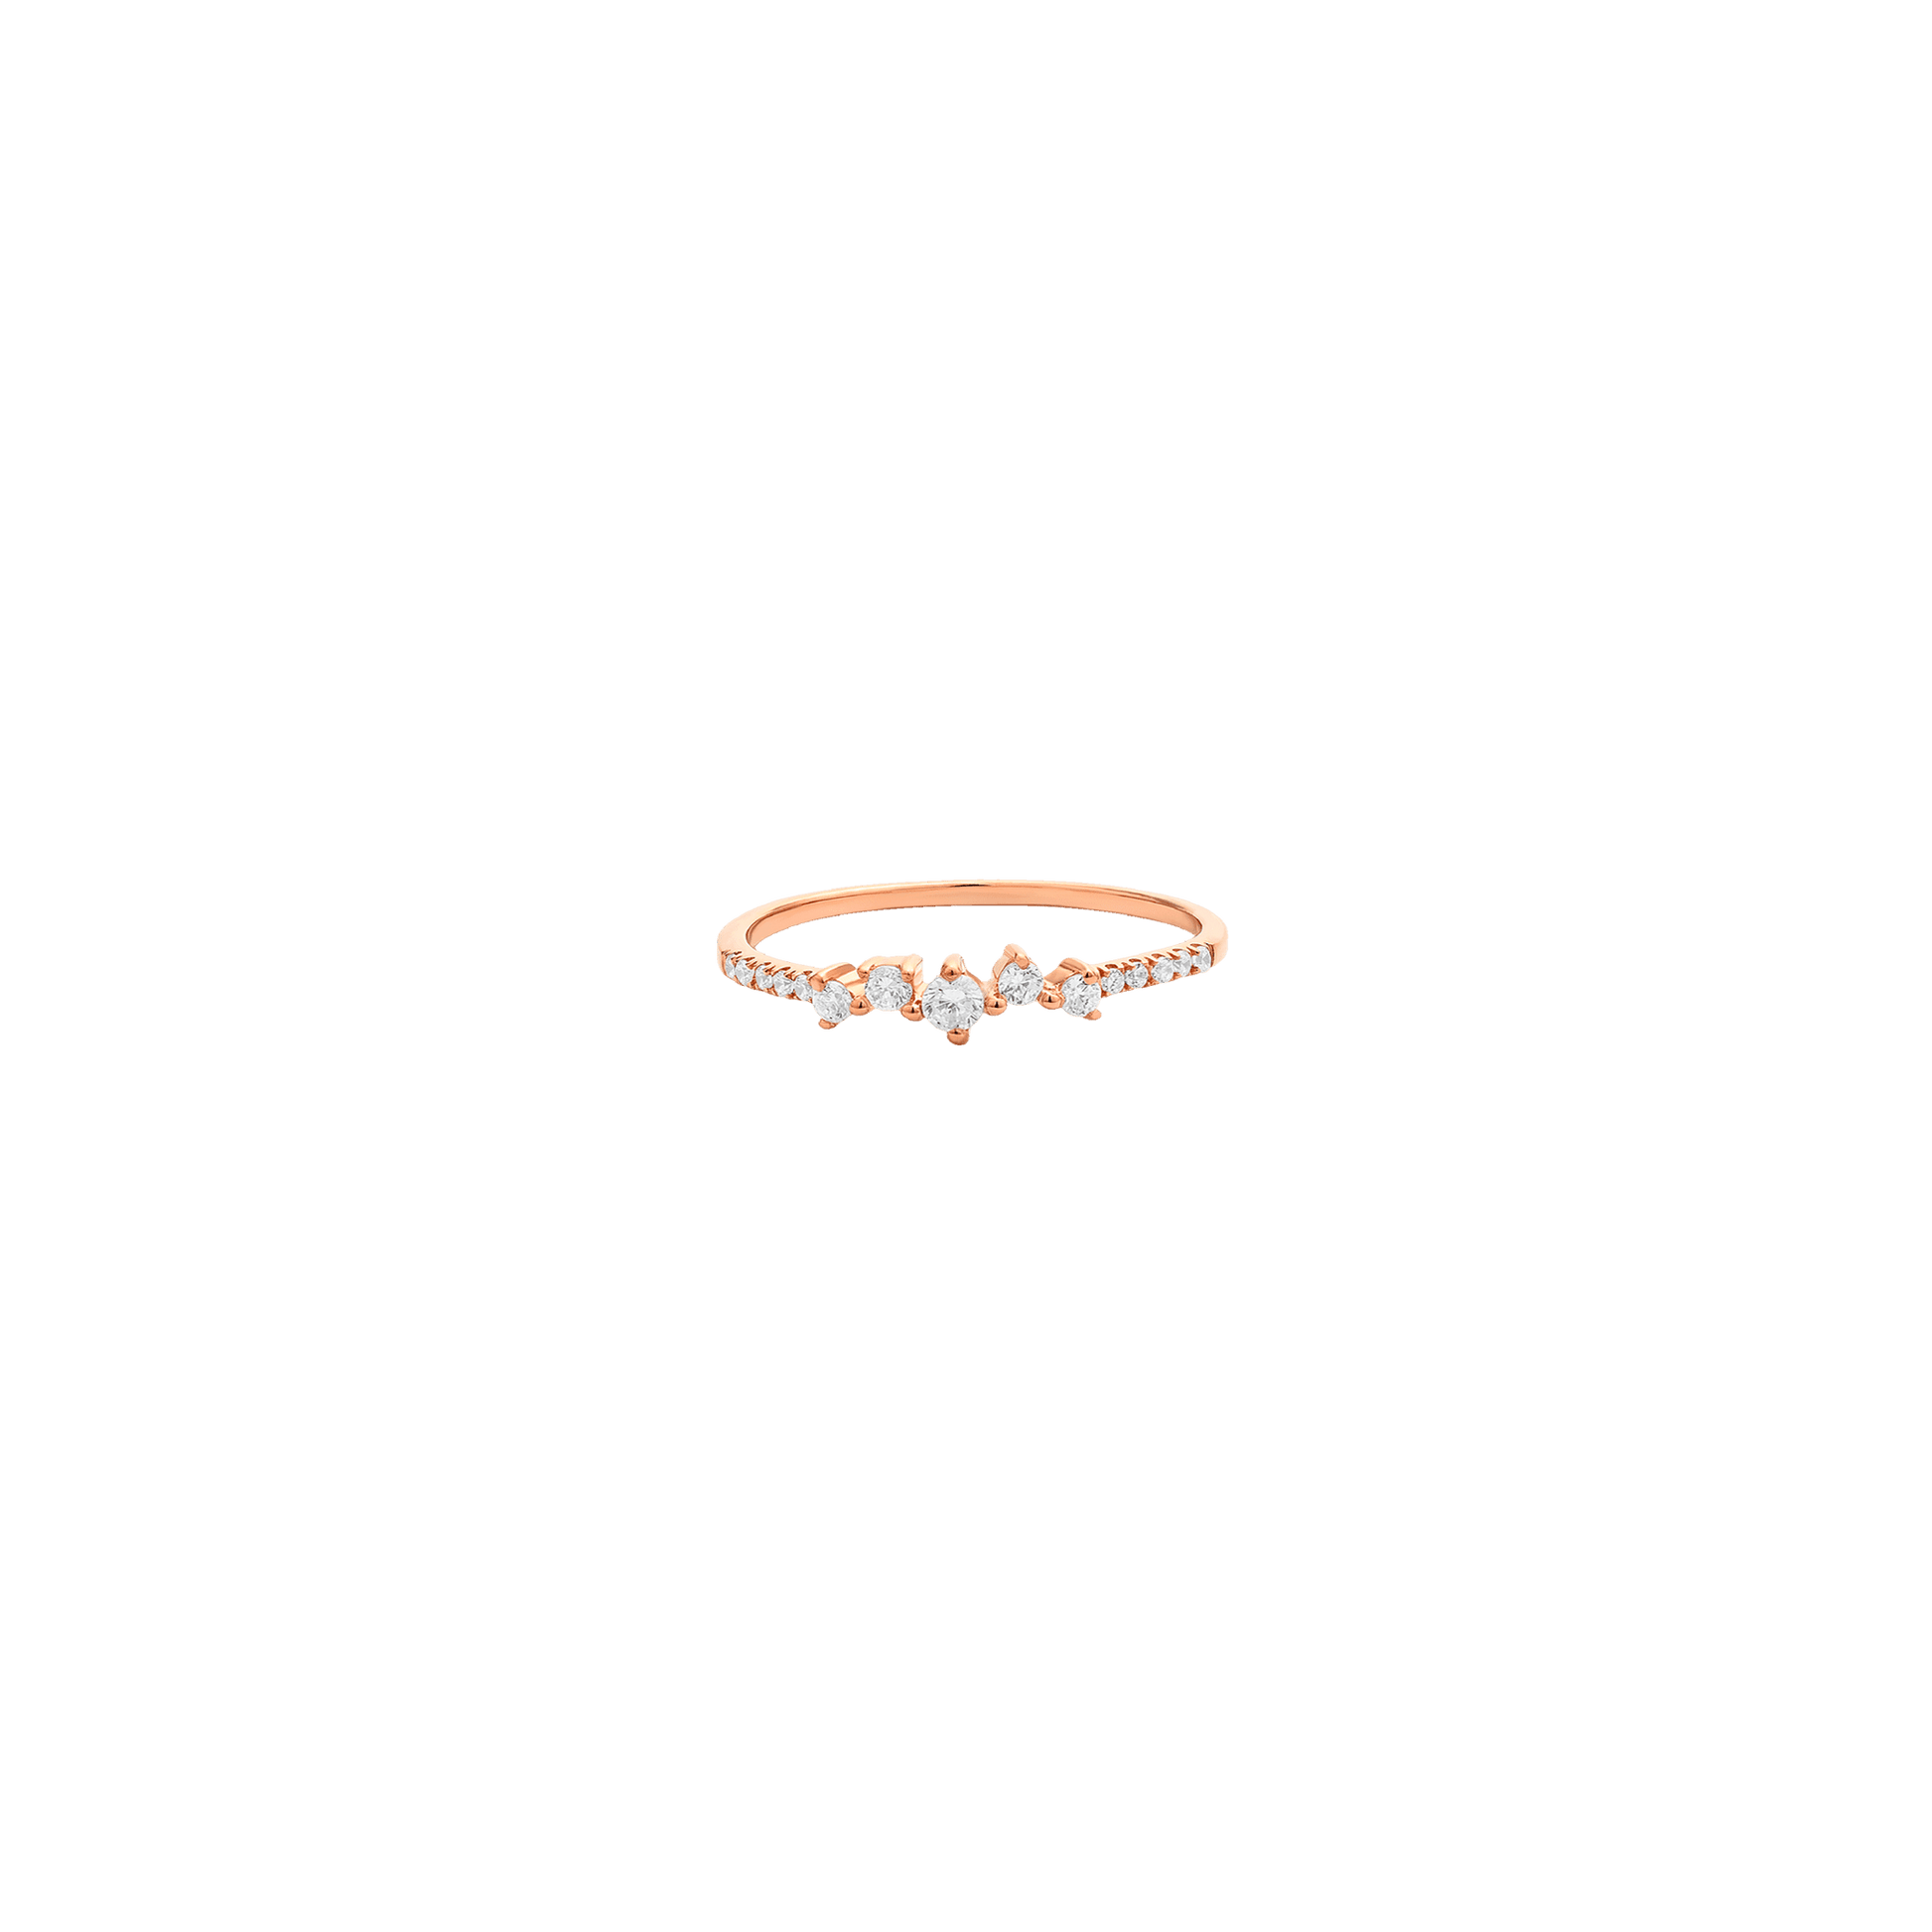 Cluster Diamond Ring - 14K White Gold Rings 14K Solid Gold 